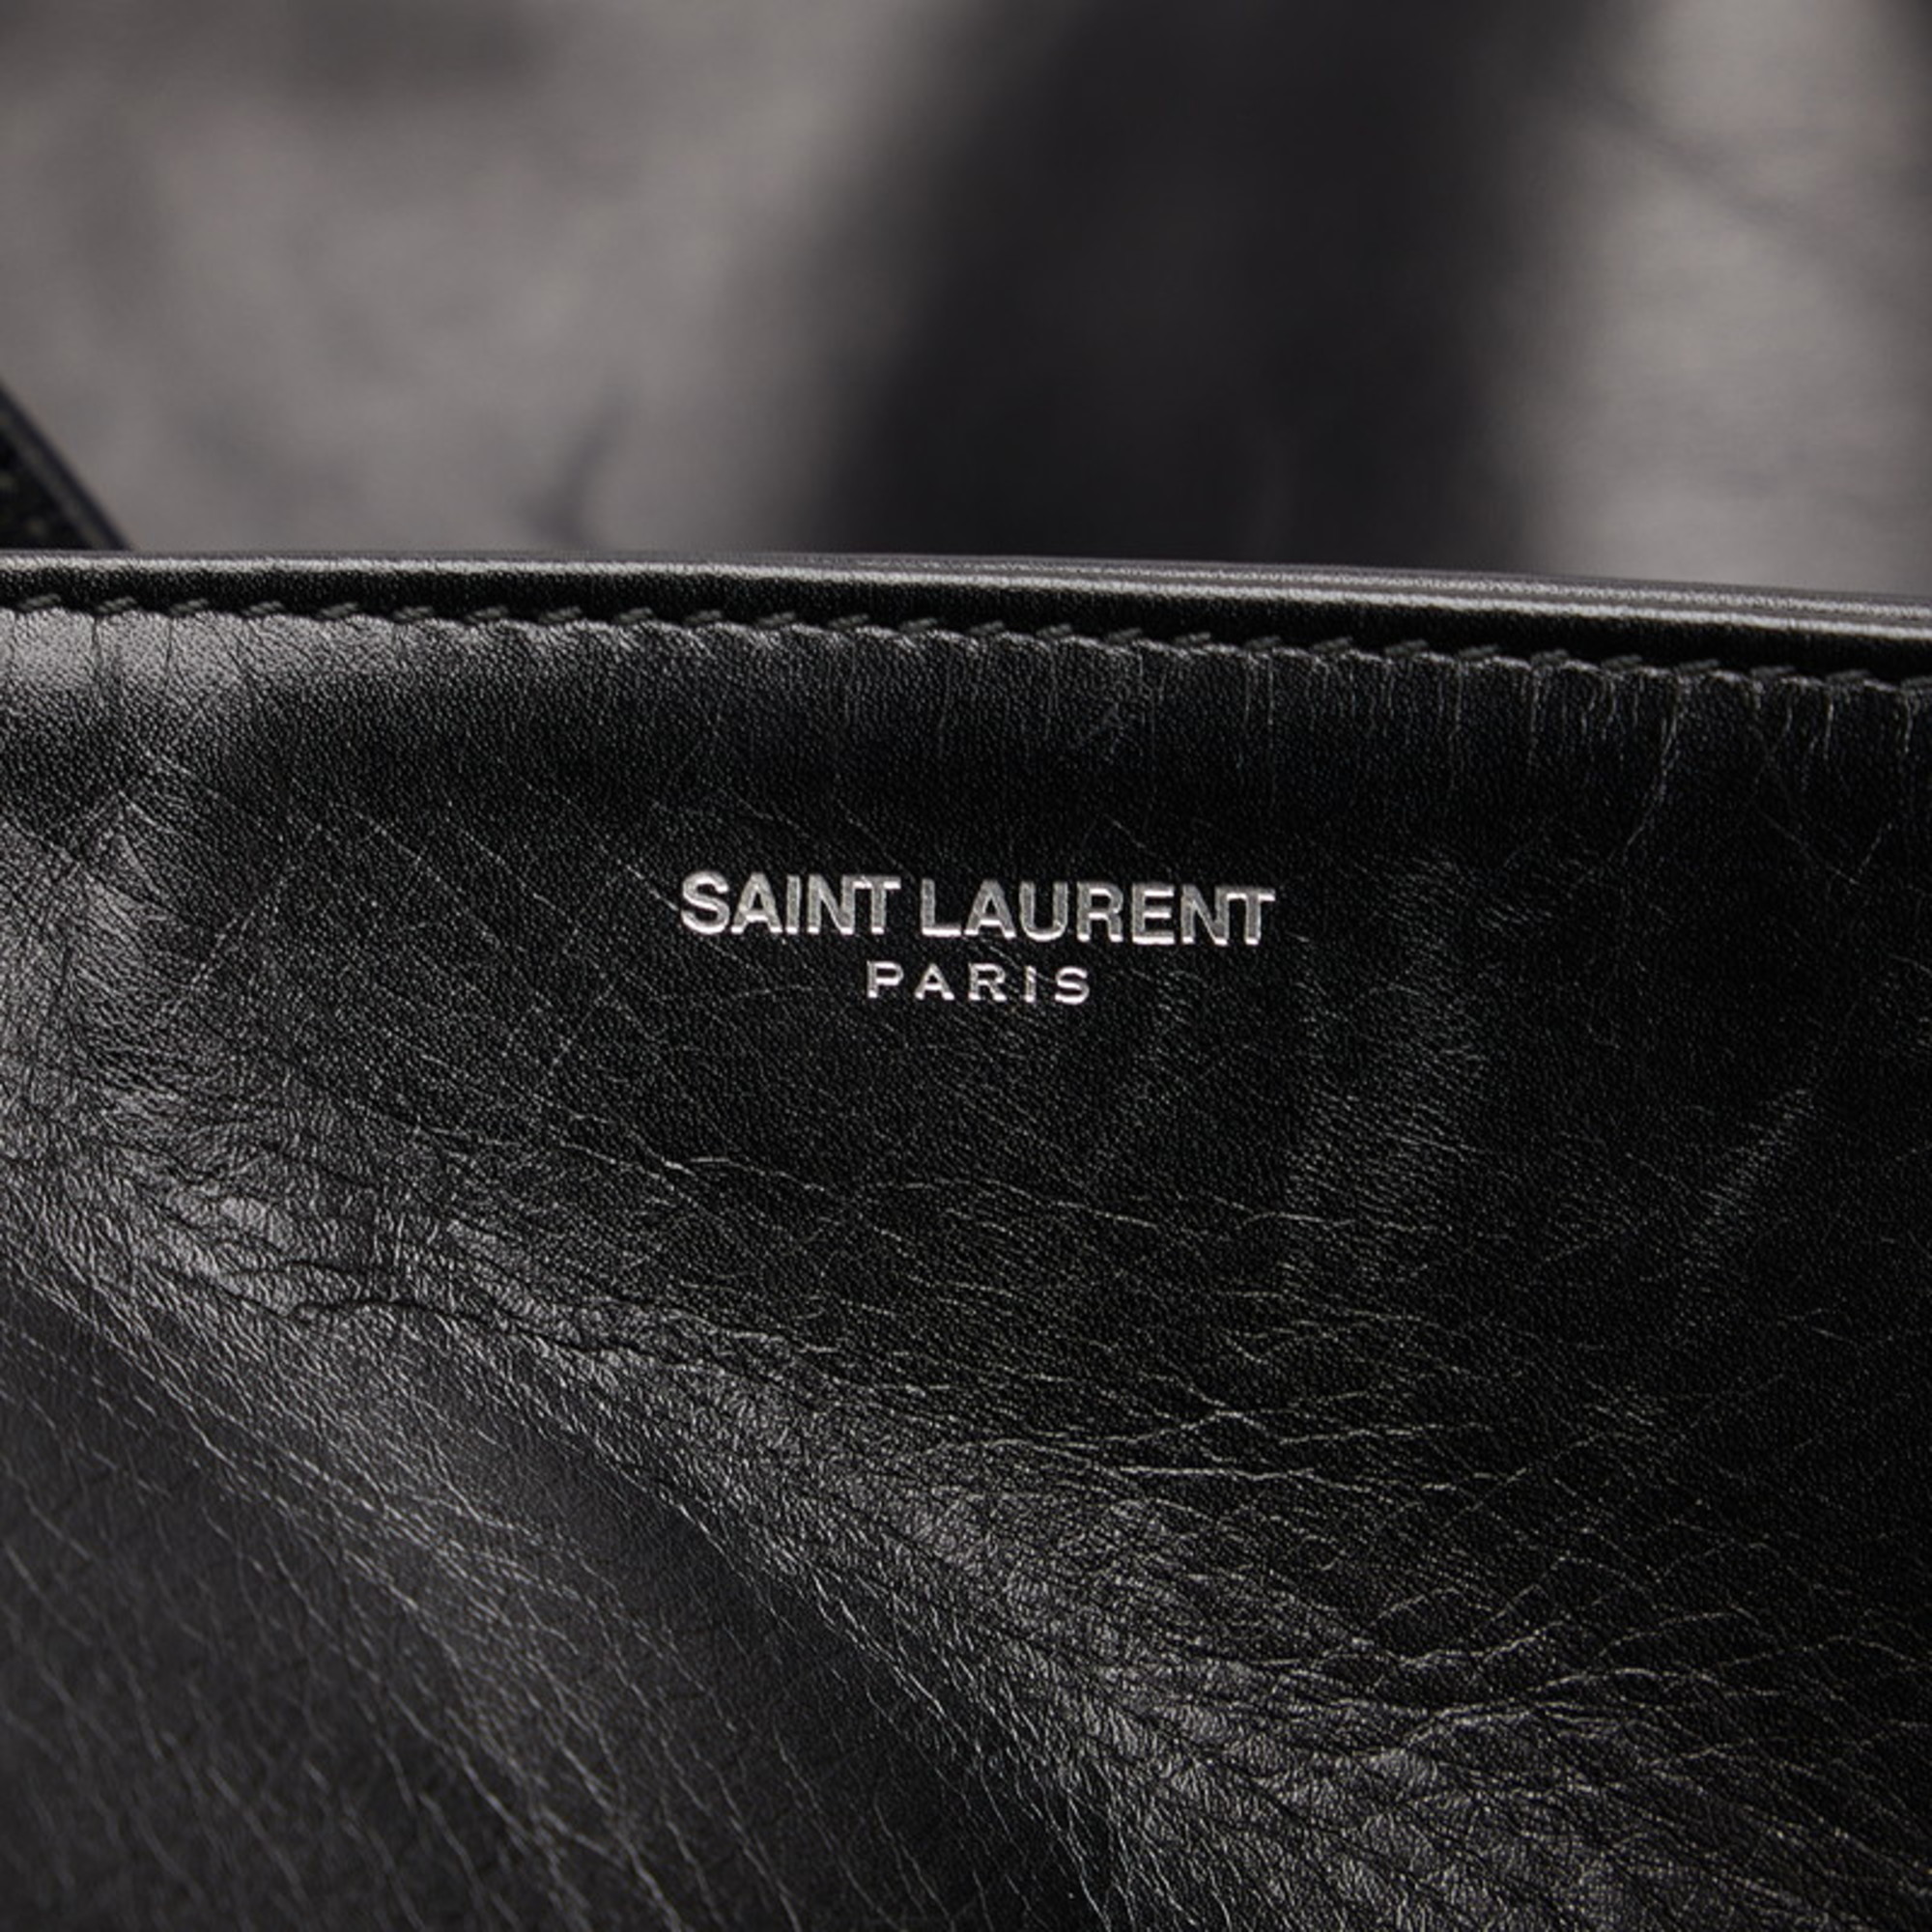 Saint Laurent Tote Bag 314663 529258 Black Leather Women's SAINT LAURENT